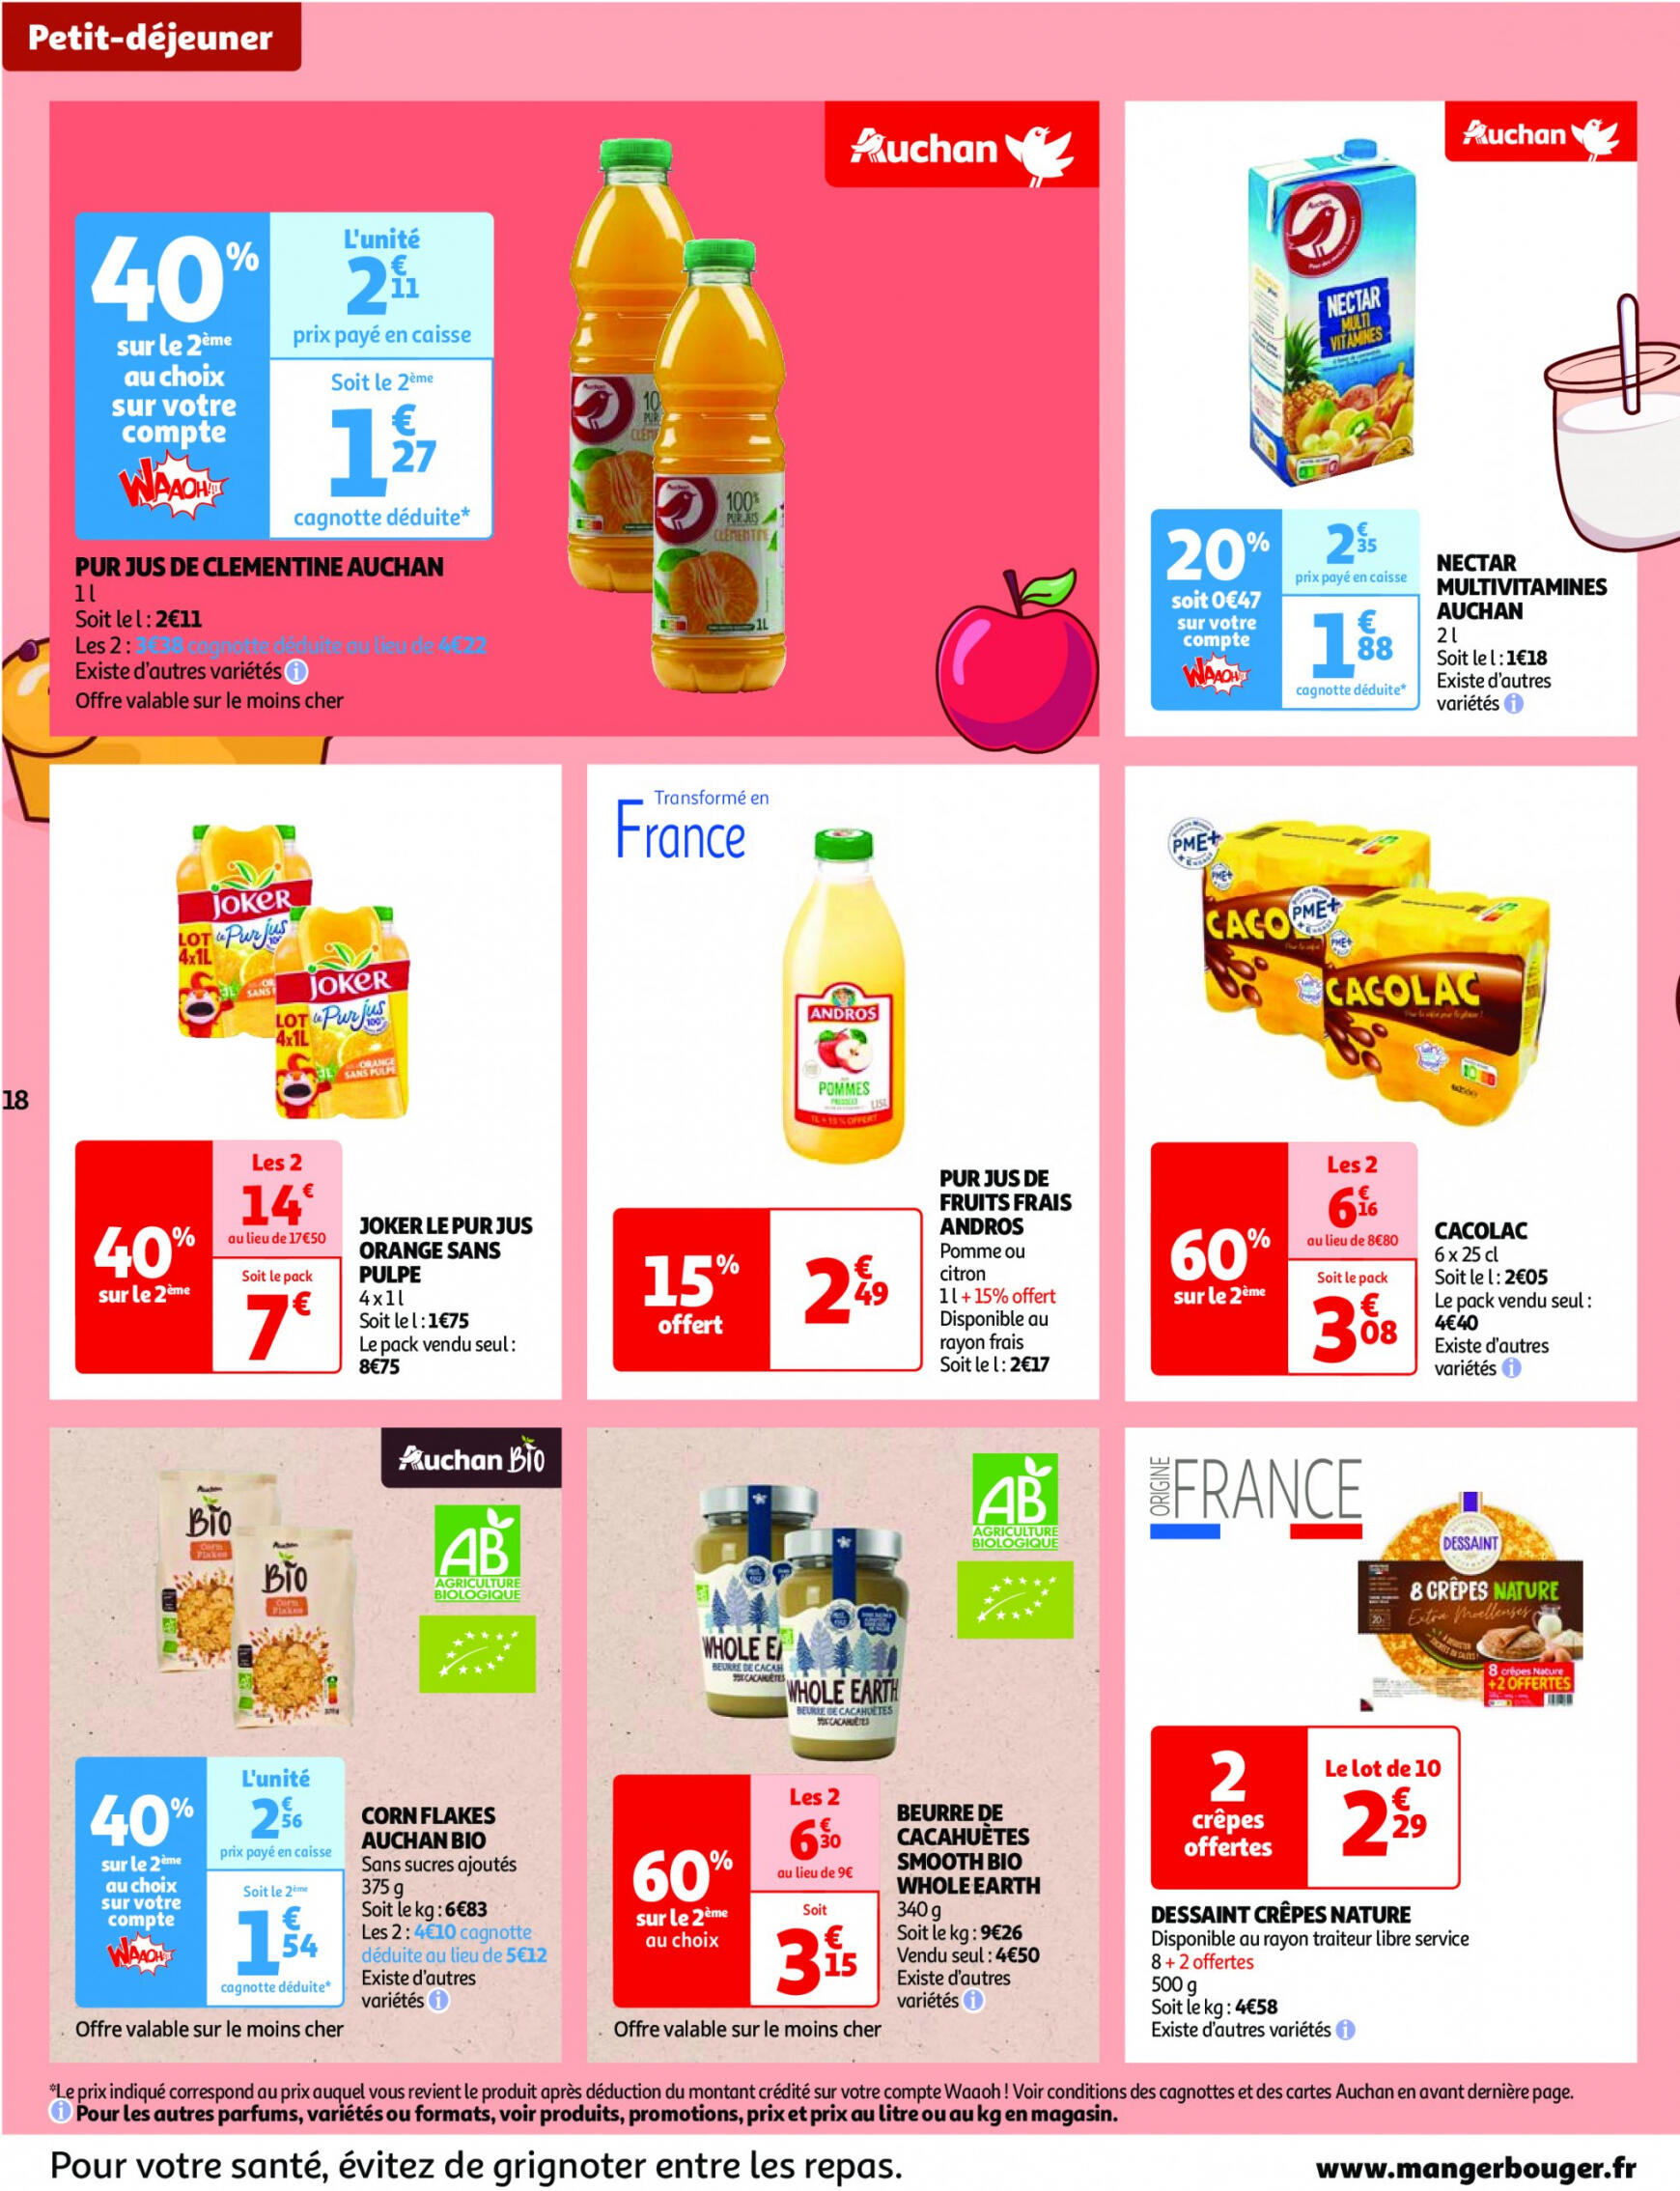 auchan - Auchan - Nos surgelés ont tout bon folder huidig 14.05. - 21.05. - page: 18